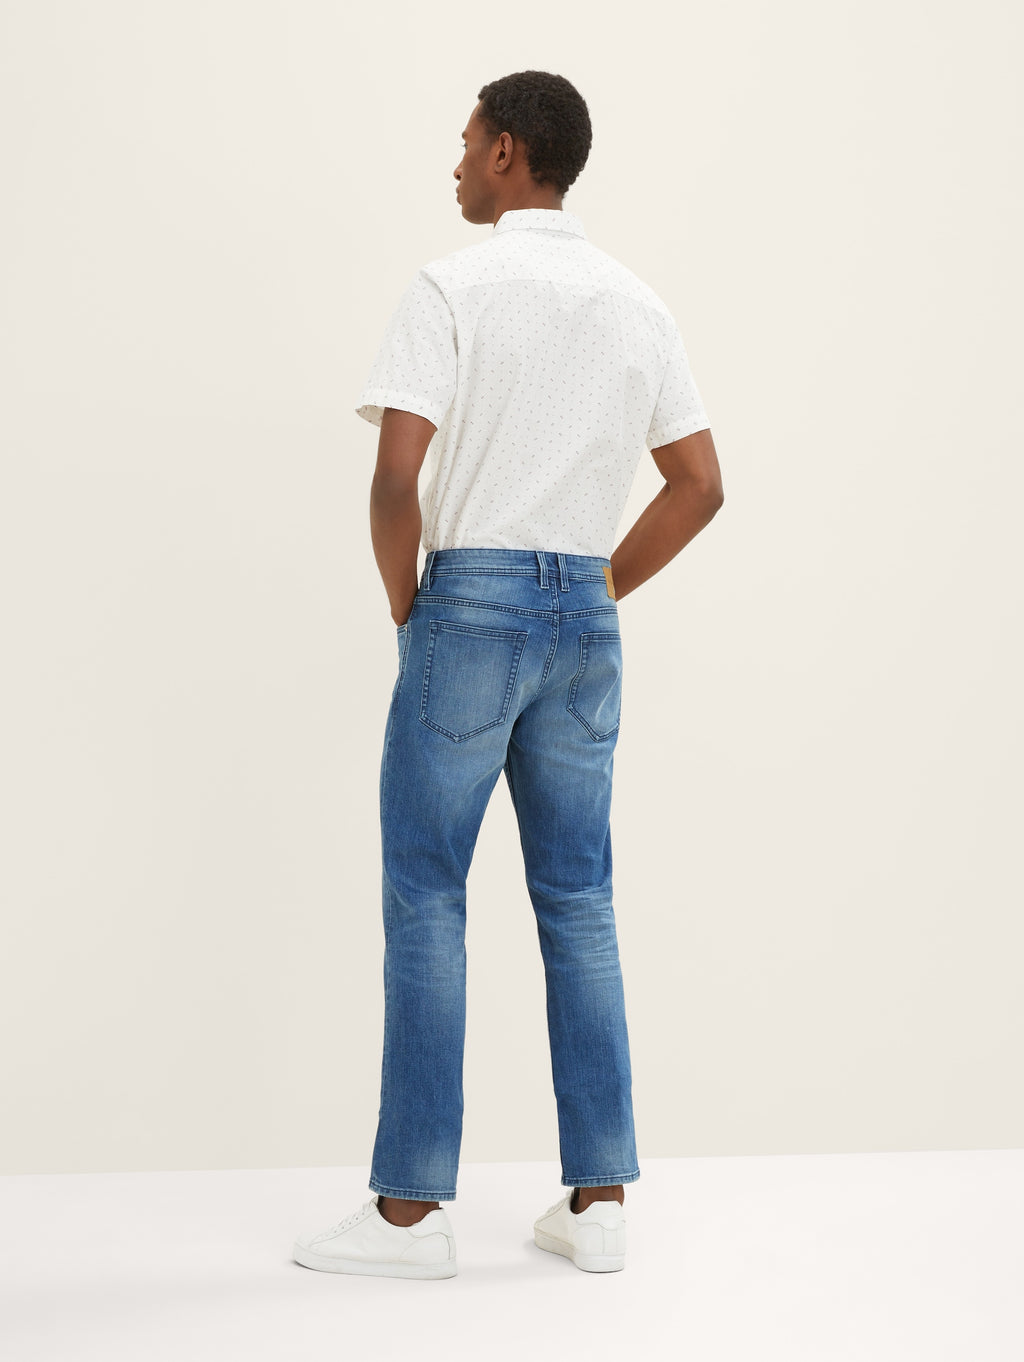 Tom Tailor Josh regular slim Coolmax jeans Used Mid Stone Blue Denim |  handsandhead